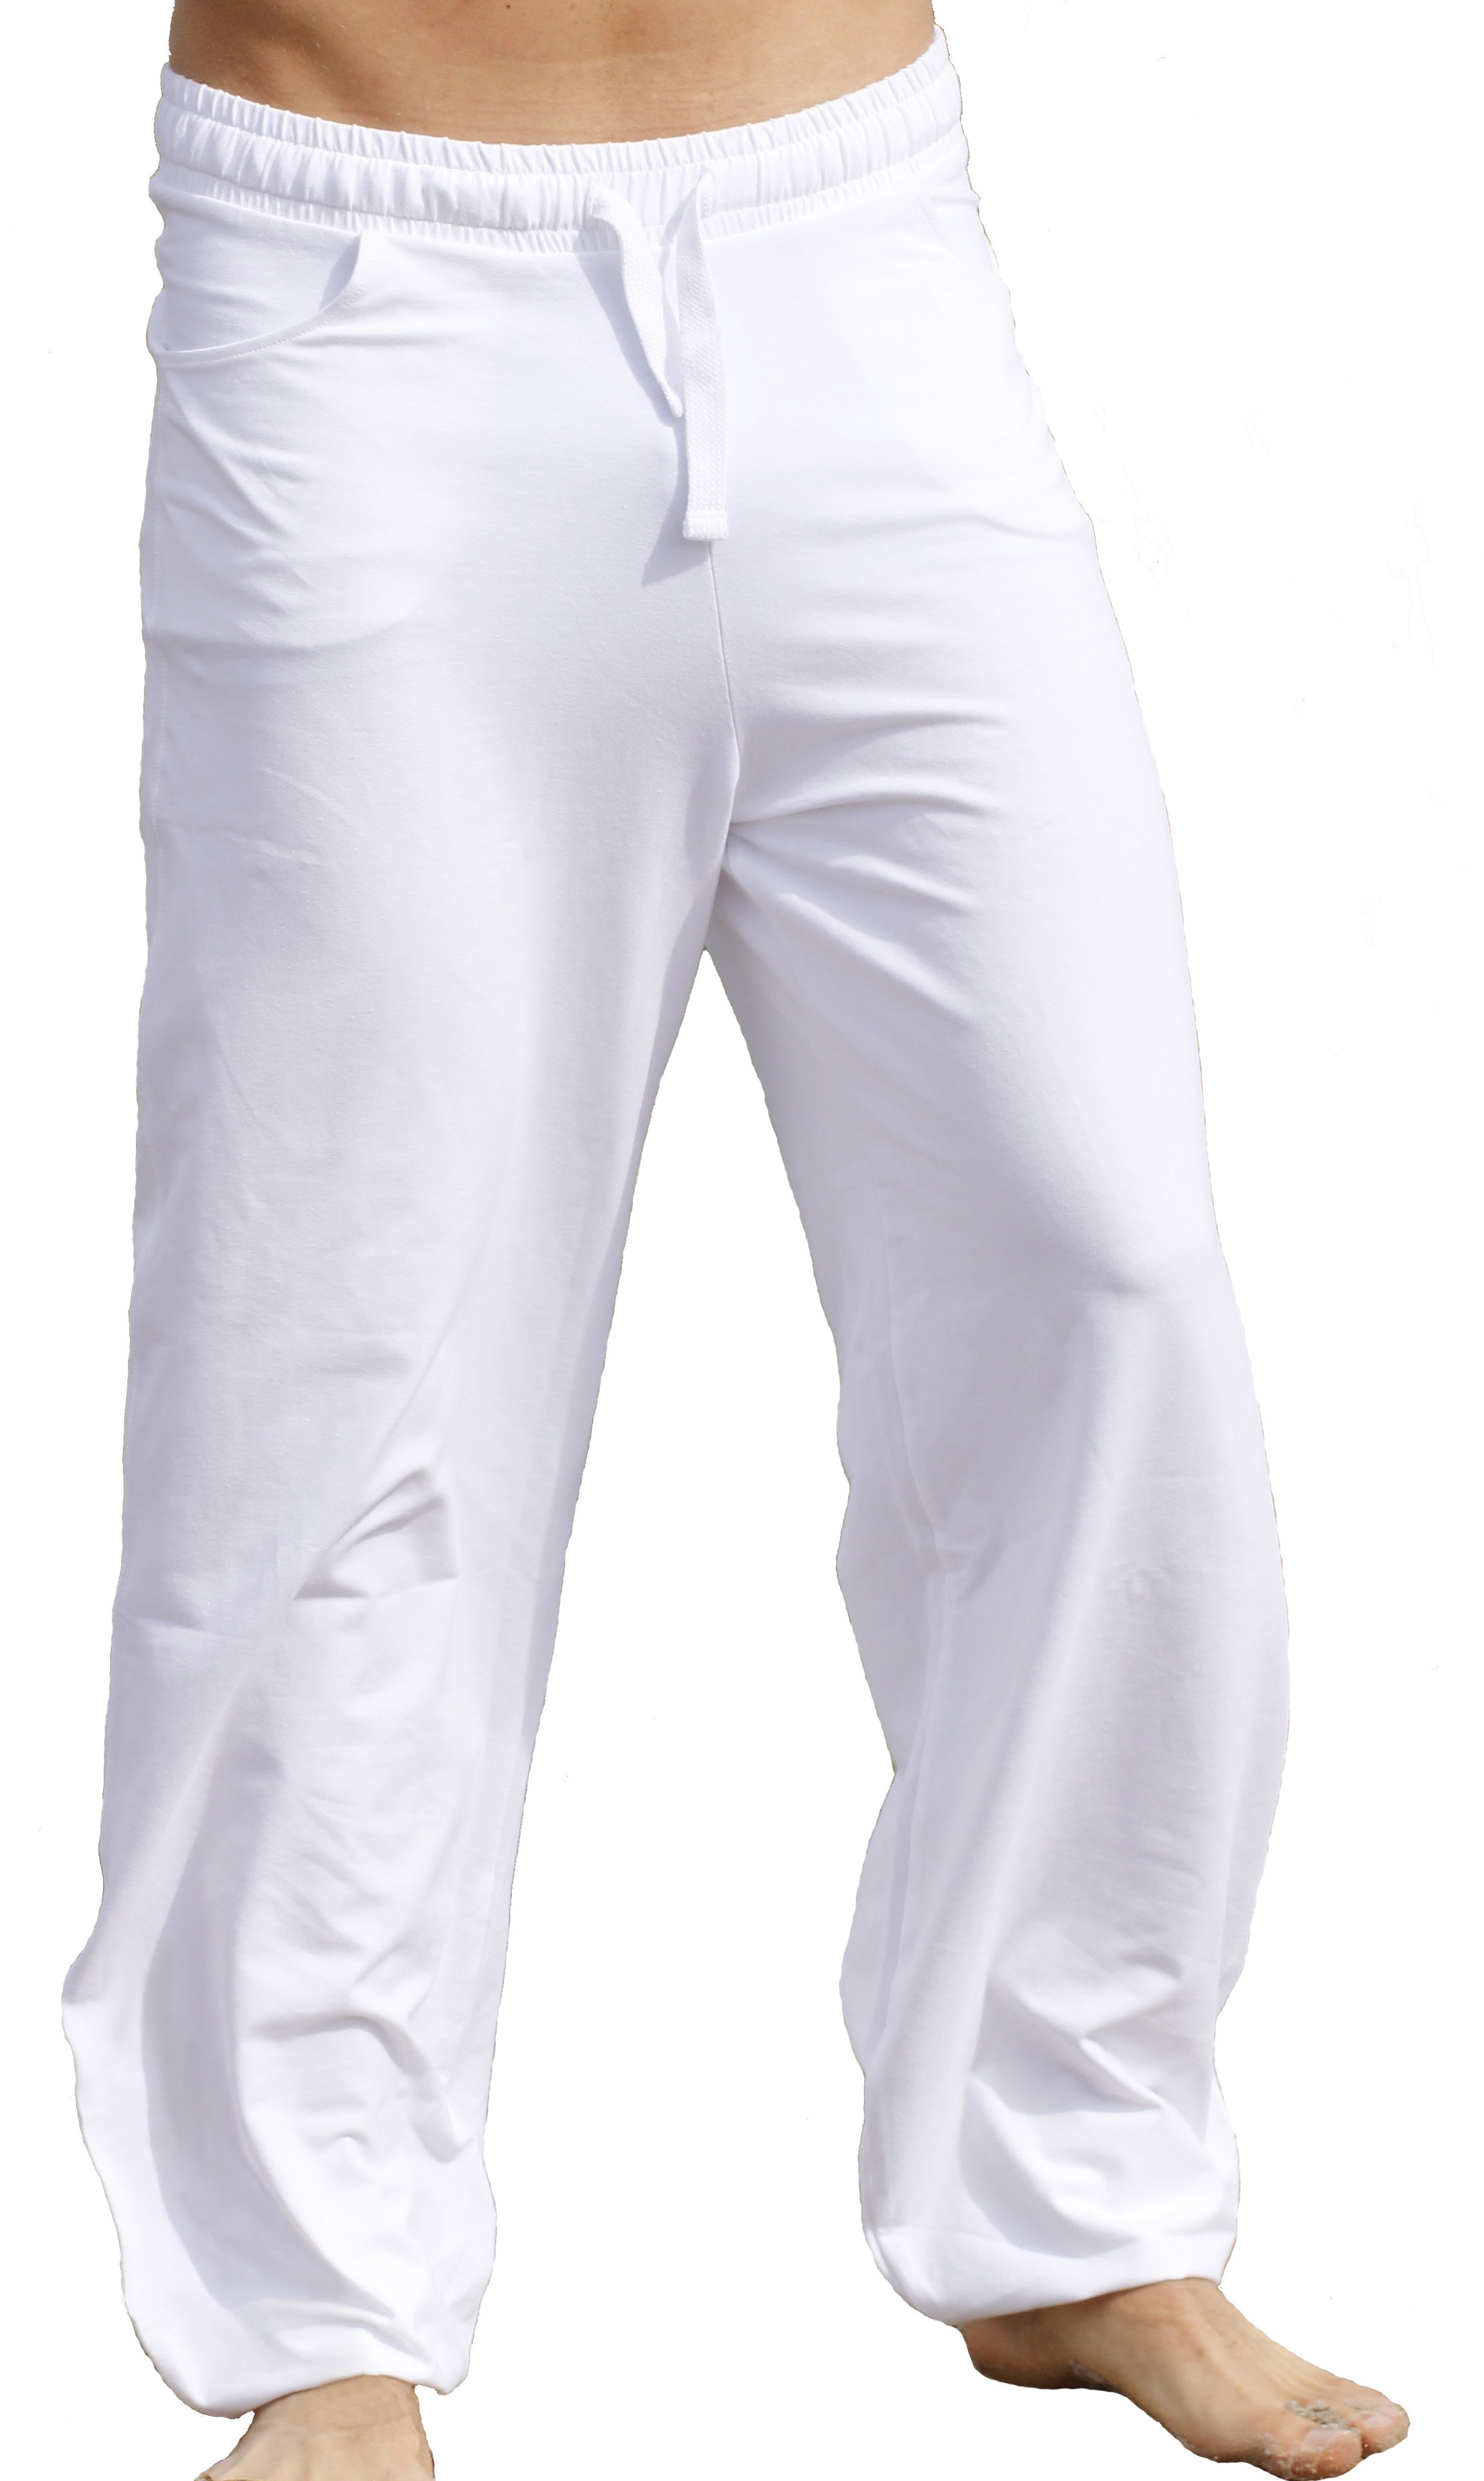 mens white yoga pants